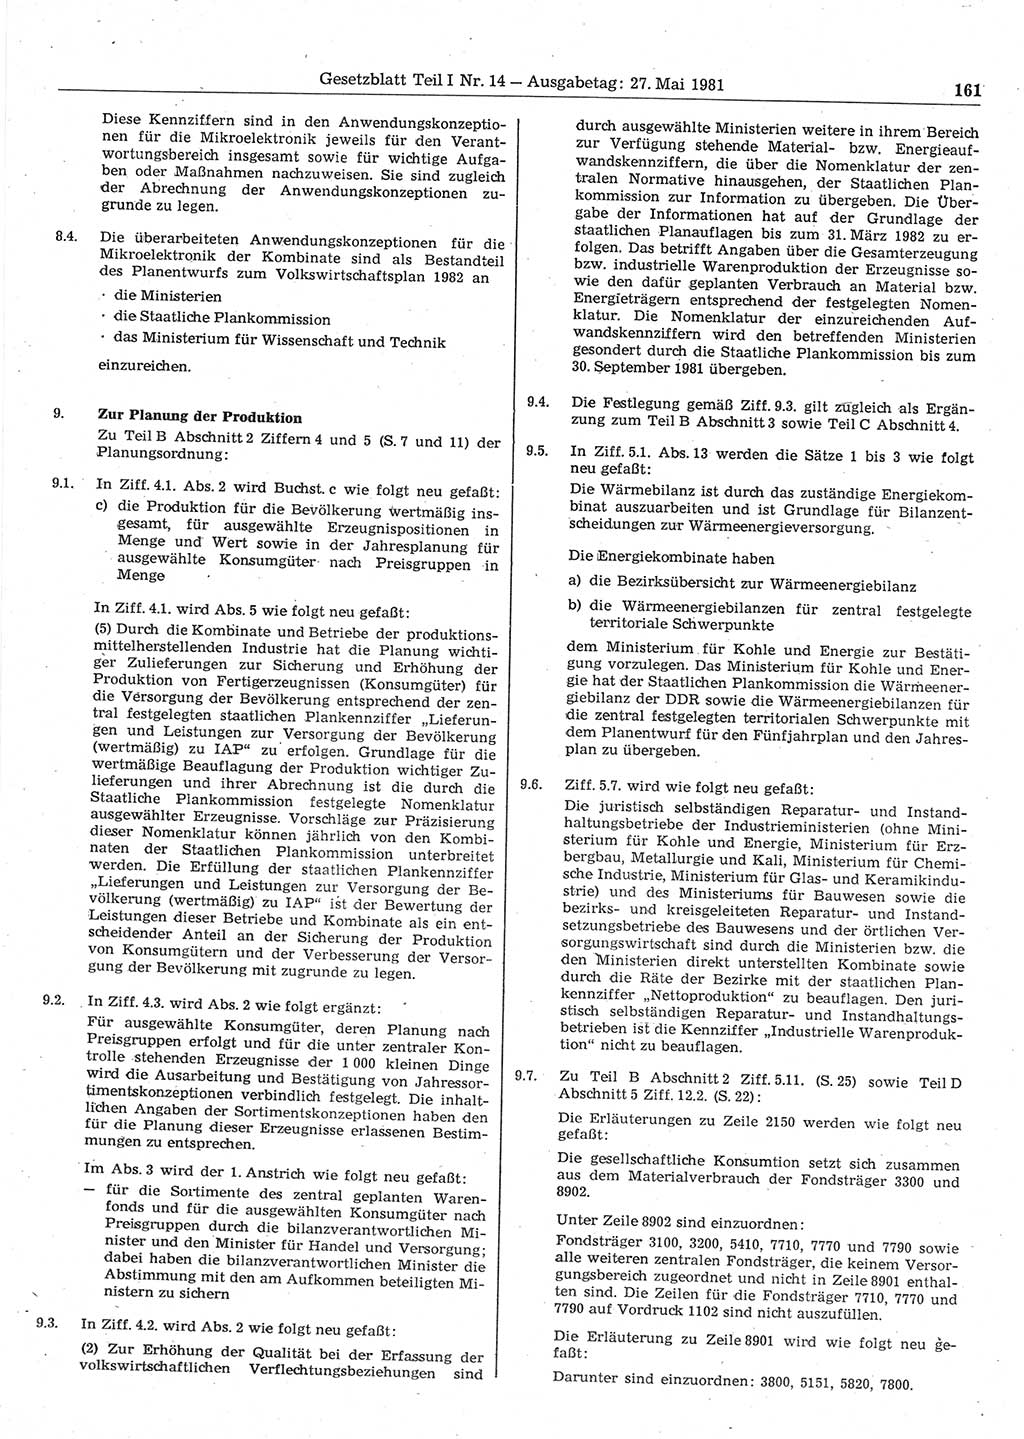 Gesetzblatt (GBl.) der Deutschen Demokratischen Republik (DDR) Teil Ⅰ 1981, Seite 161 (GBl. DDR Ⅰ 1981, S. 161)